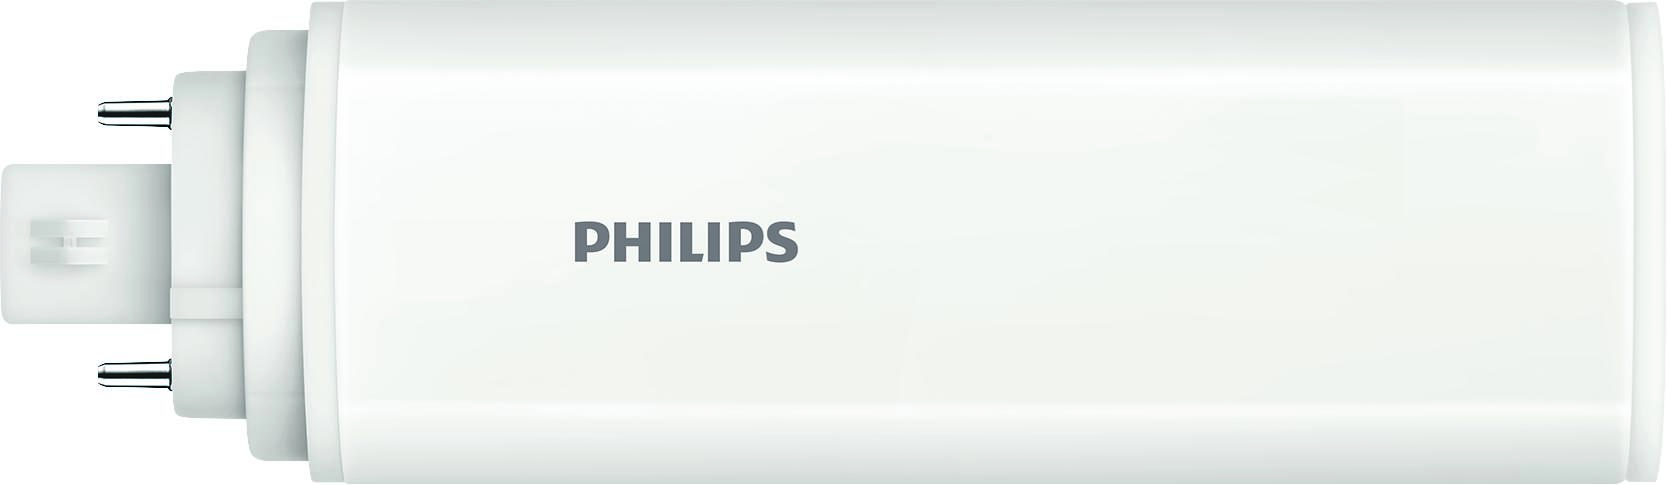 Philips Lighting LED-Kompaktlampe f. EVG G24Q-3, 840 CoreLEDPLT #48782600